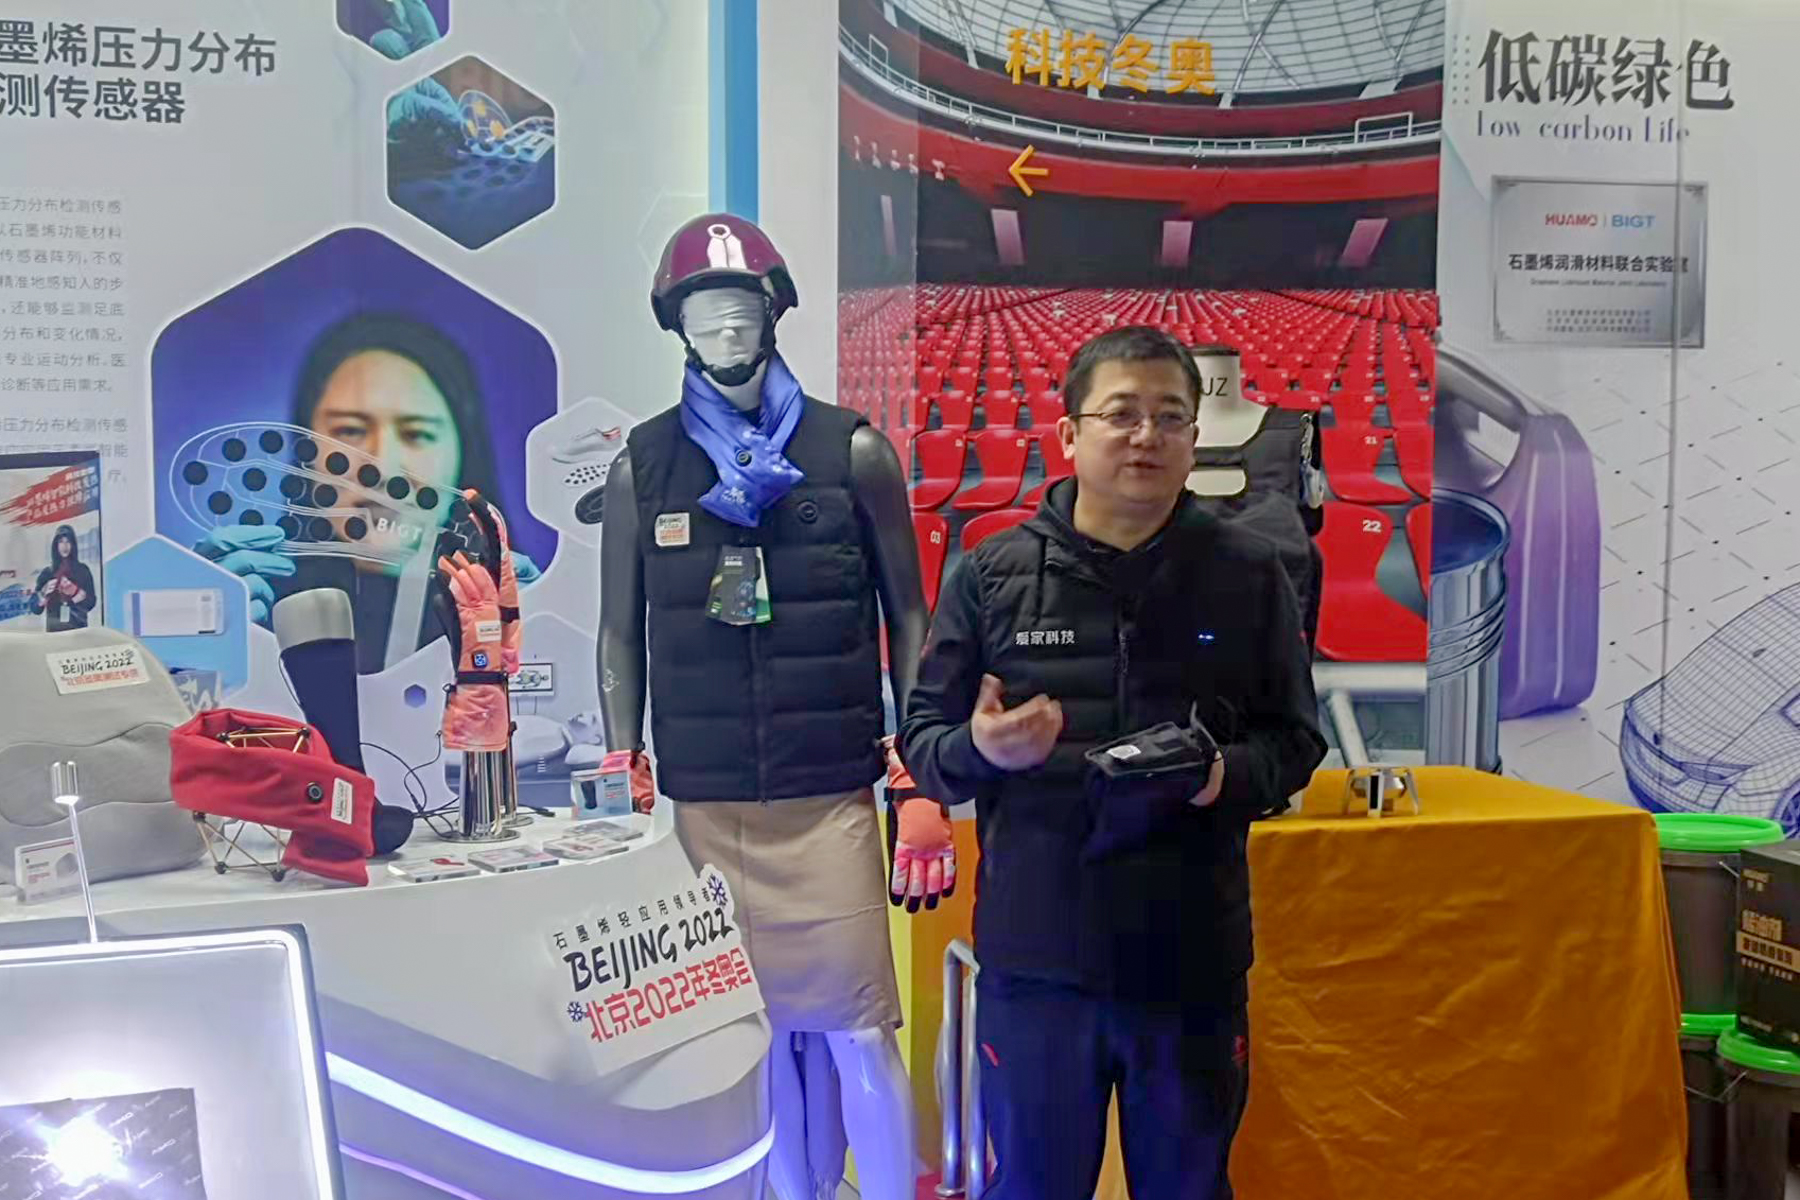 陈利军介绍石墨烯在2022北京冬奥会的应用  本文图片 澎湃新闻记者 周頔 摄